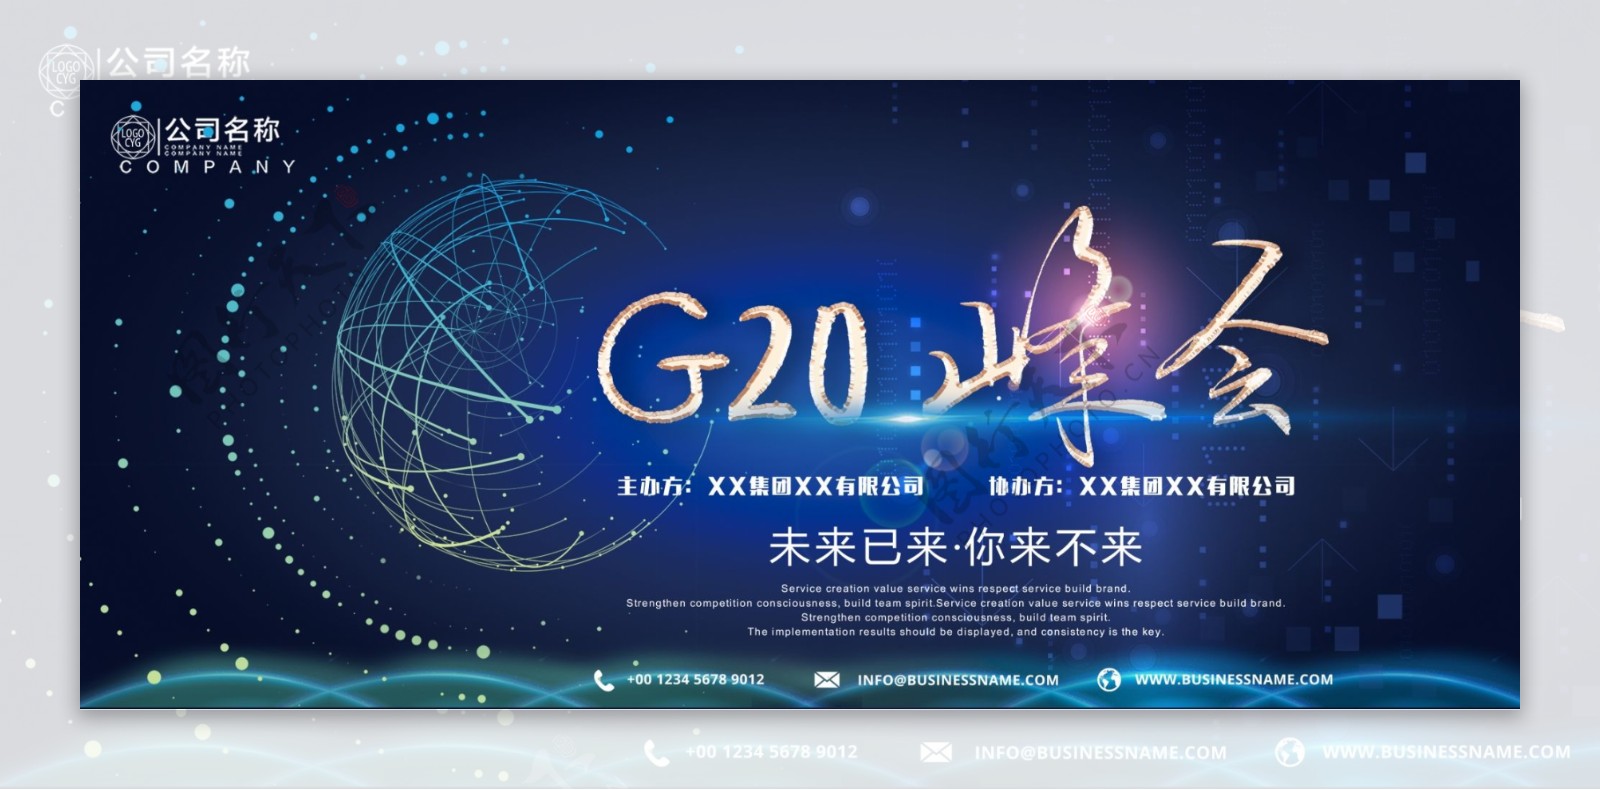 蓝色创意经典大气峰会G20创新科技展板